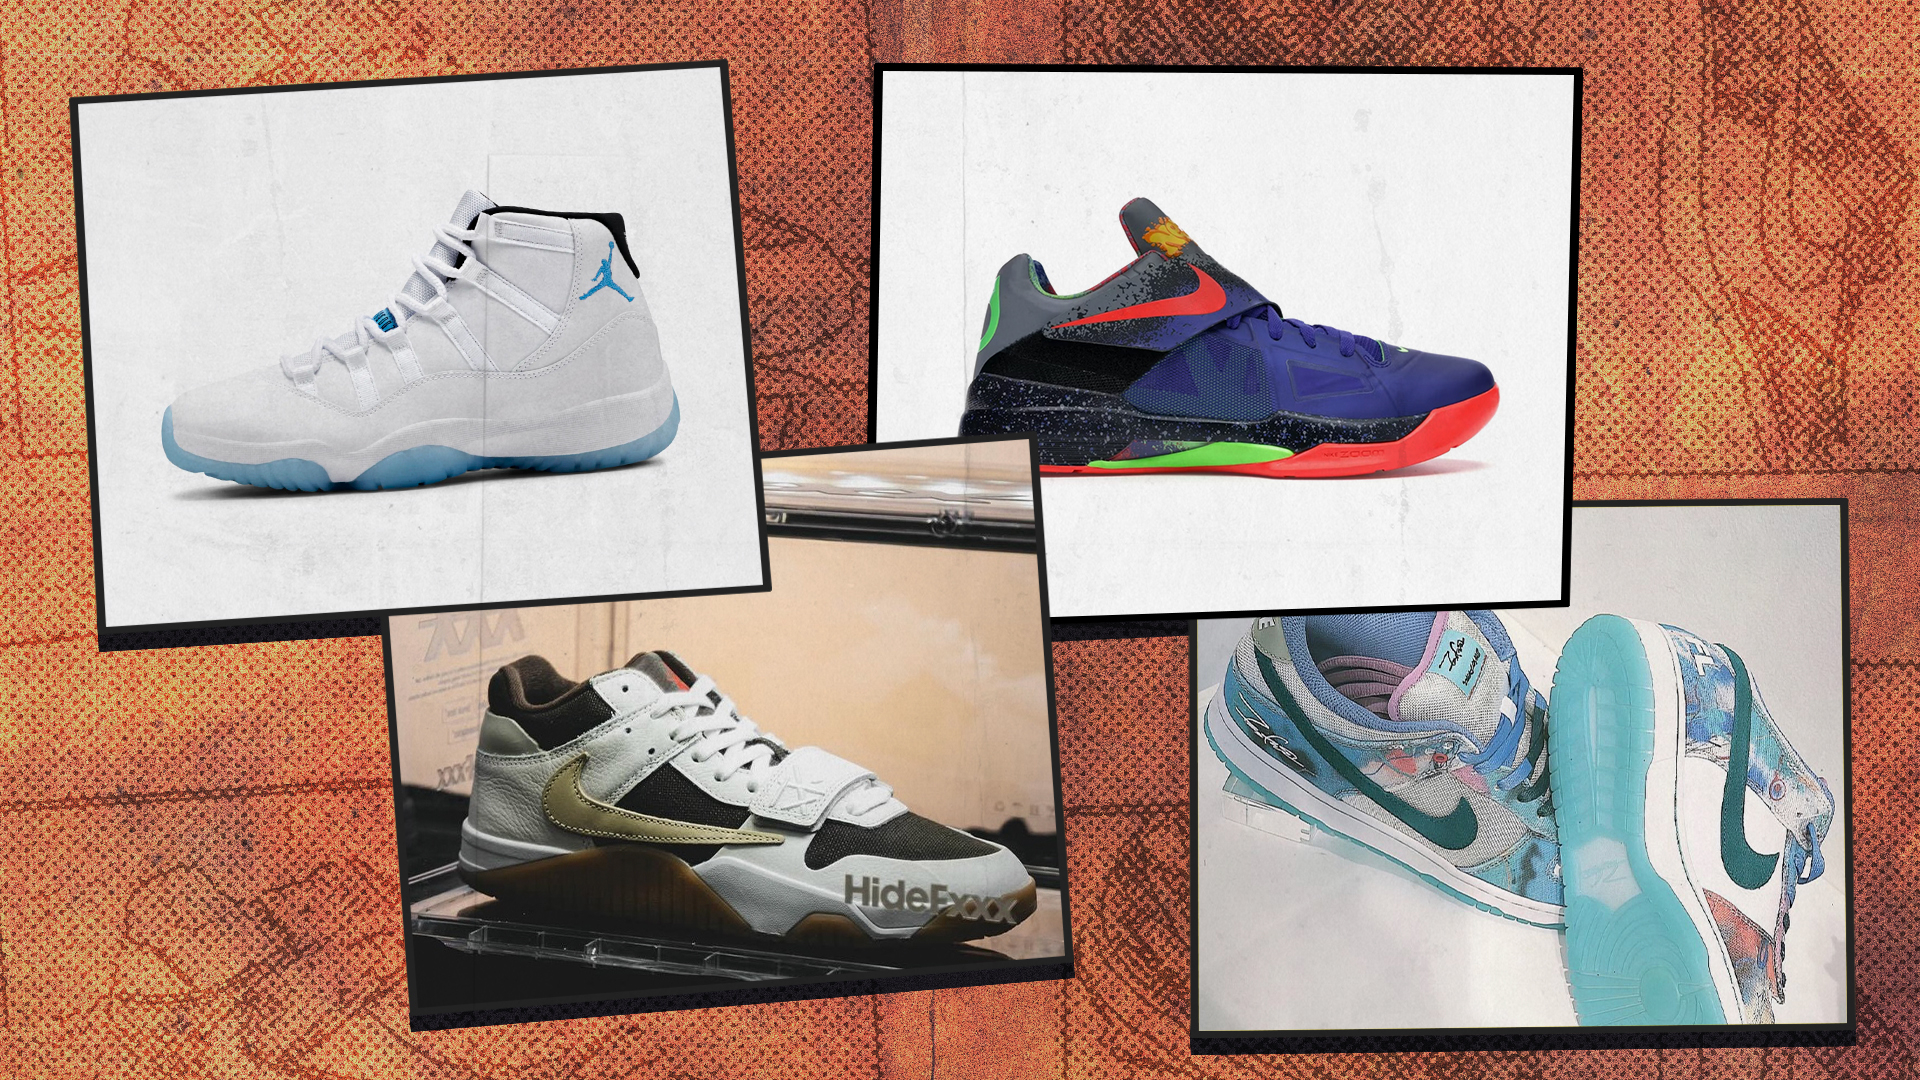 Sneaker Release Guide: Supreme x Nike SB, Palace x Salomon & More | Complex